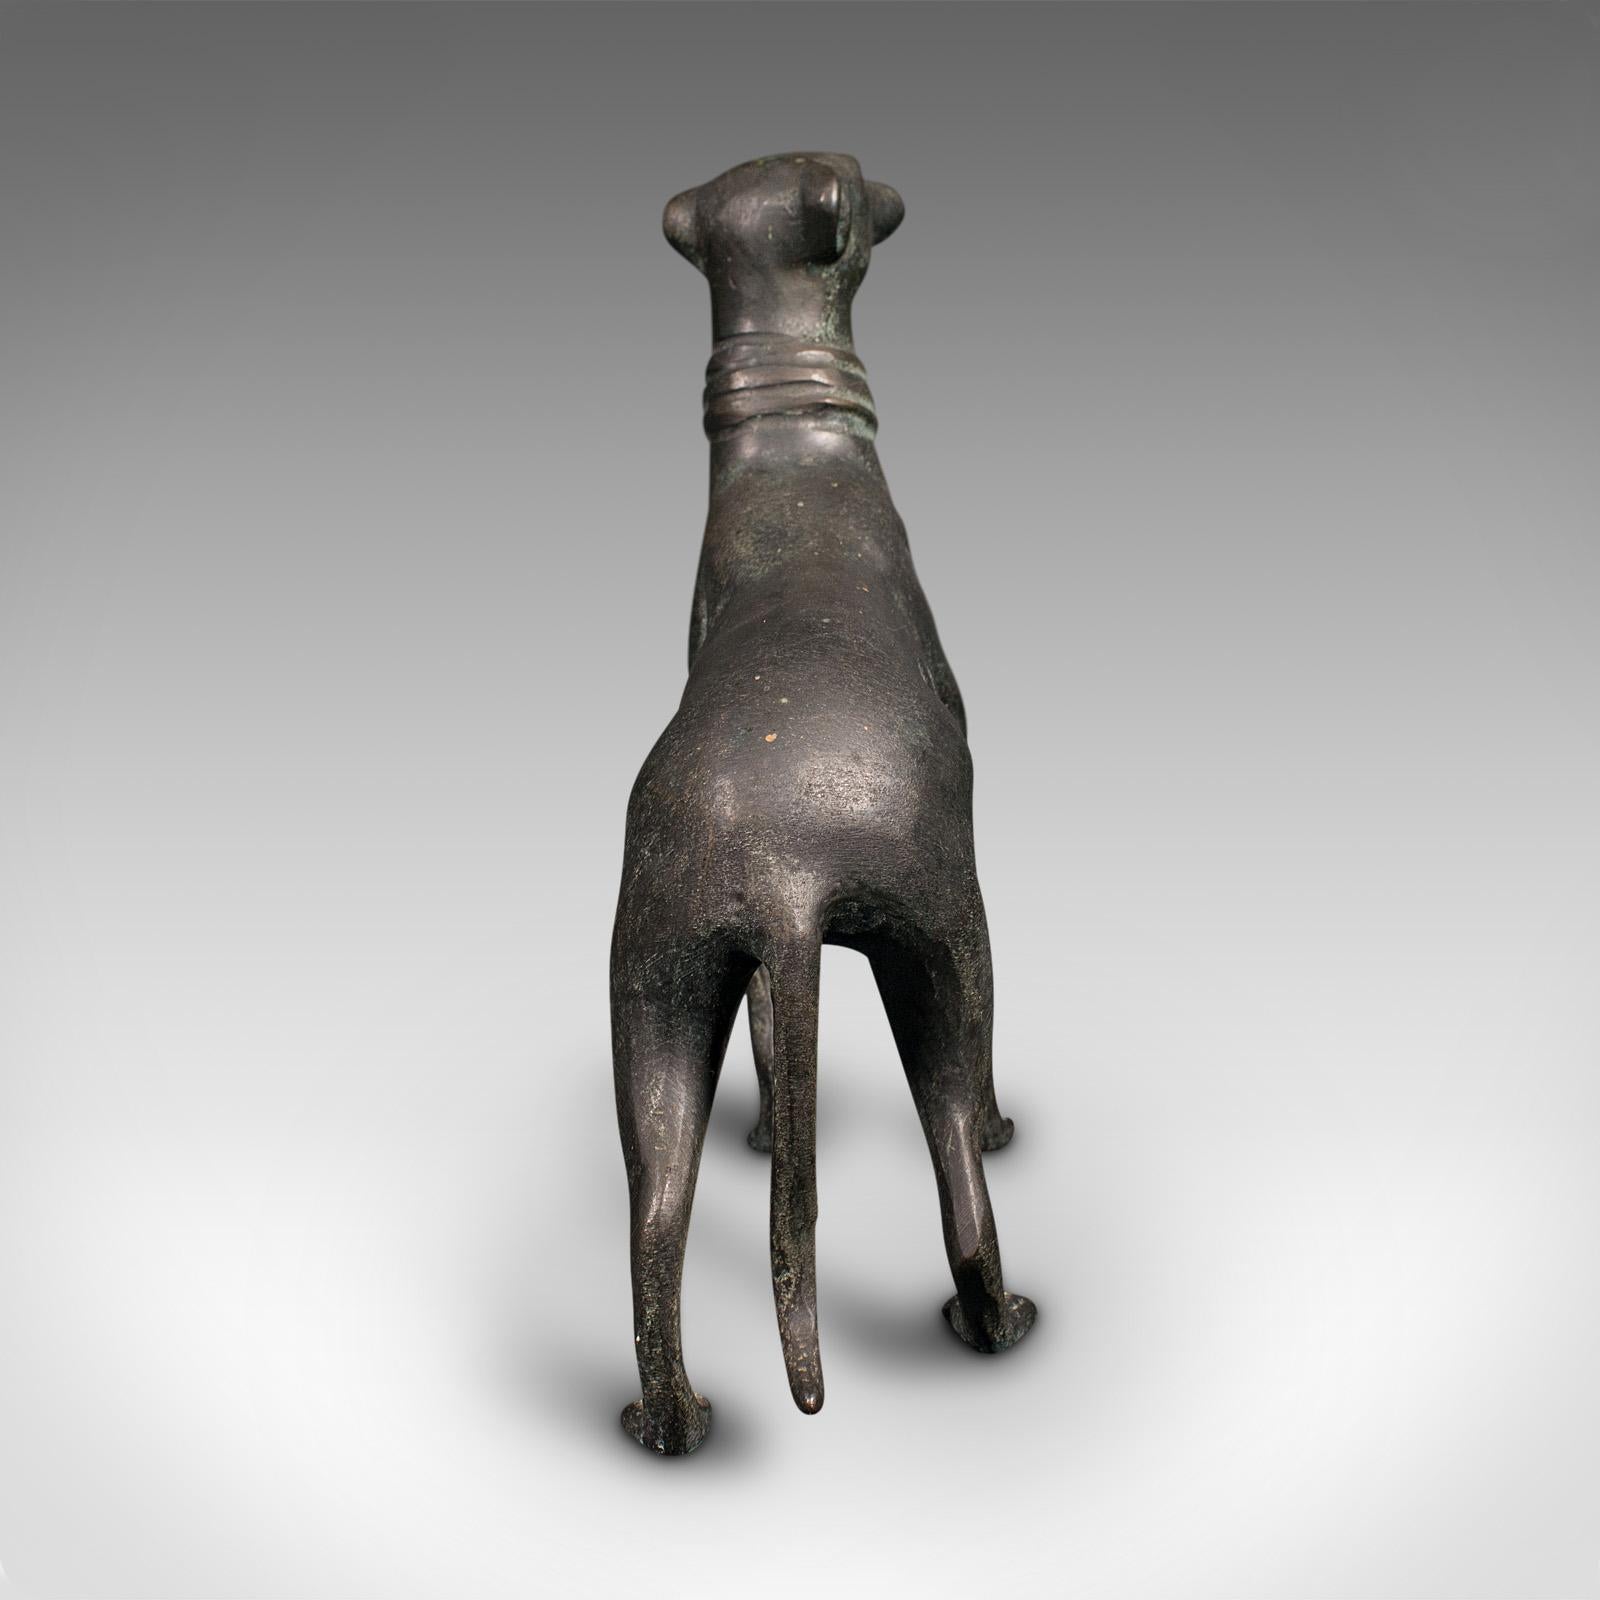 20th Century Vintage Greyhound Figure, French, Bronze, Dog Statue, Art Deco Taste, Circa 1930 For Sale